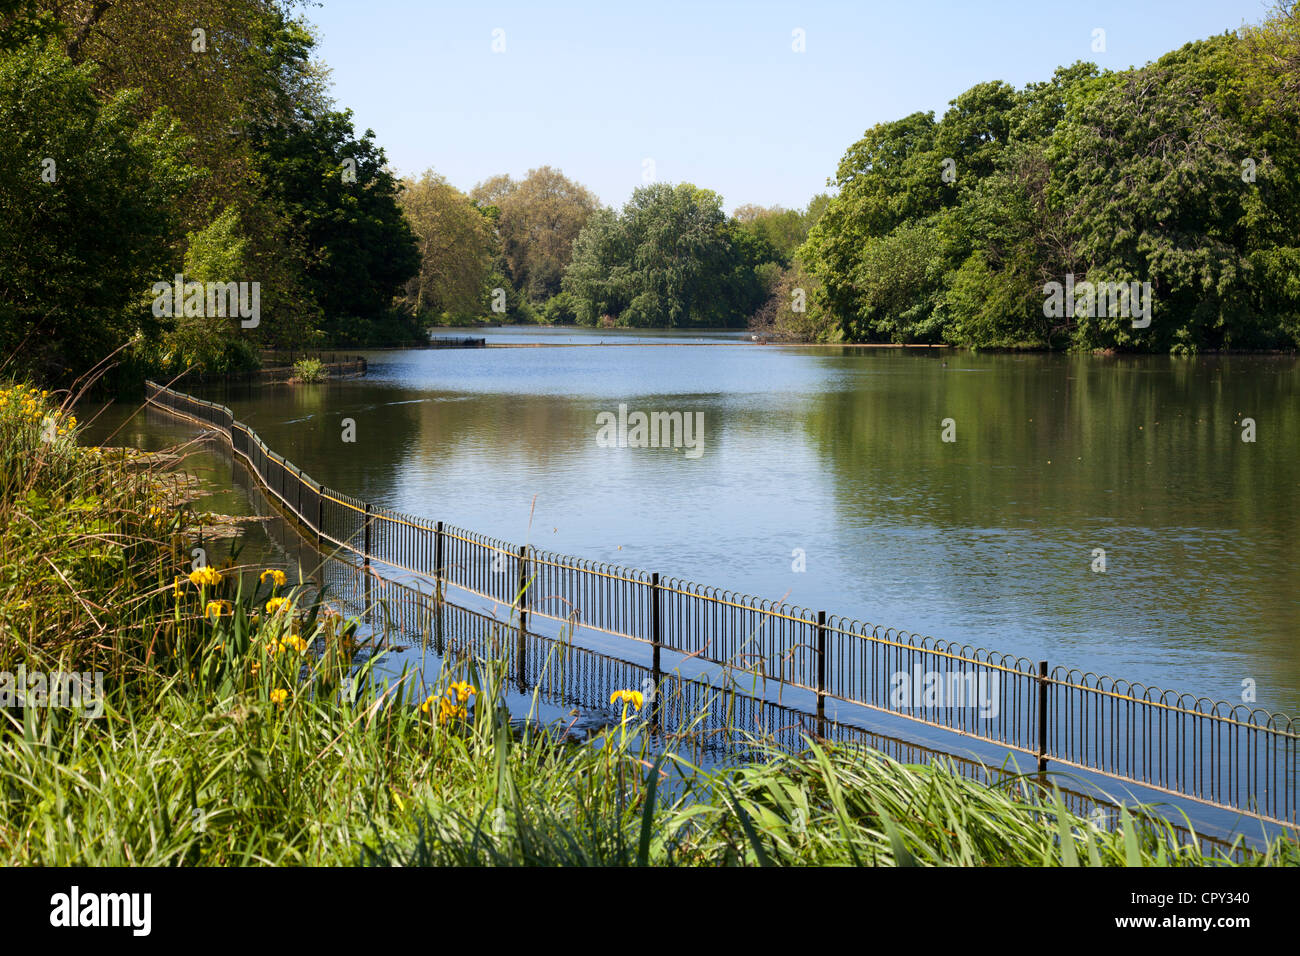 Battersea Park Pond - London - UK Stock Photo - Alamy